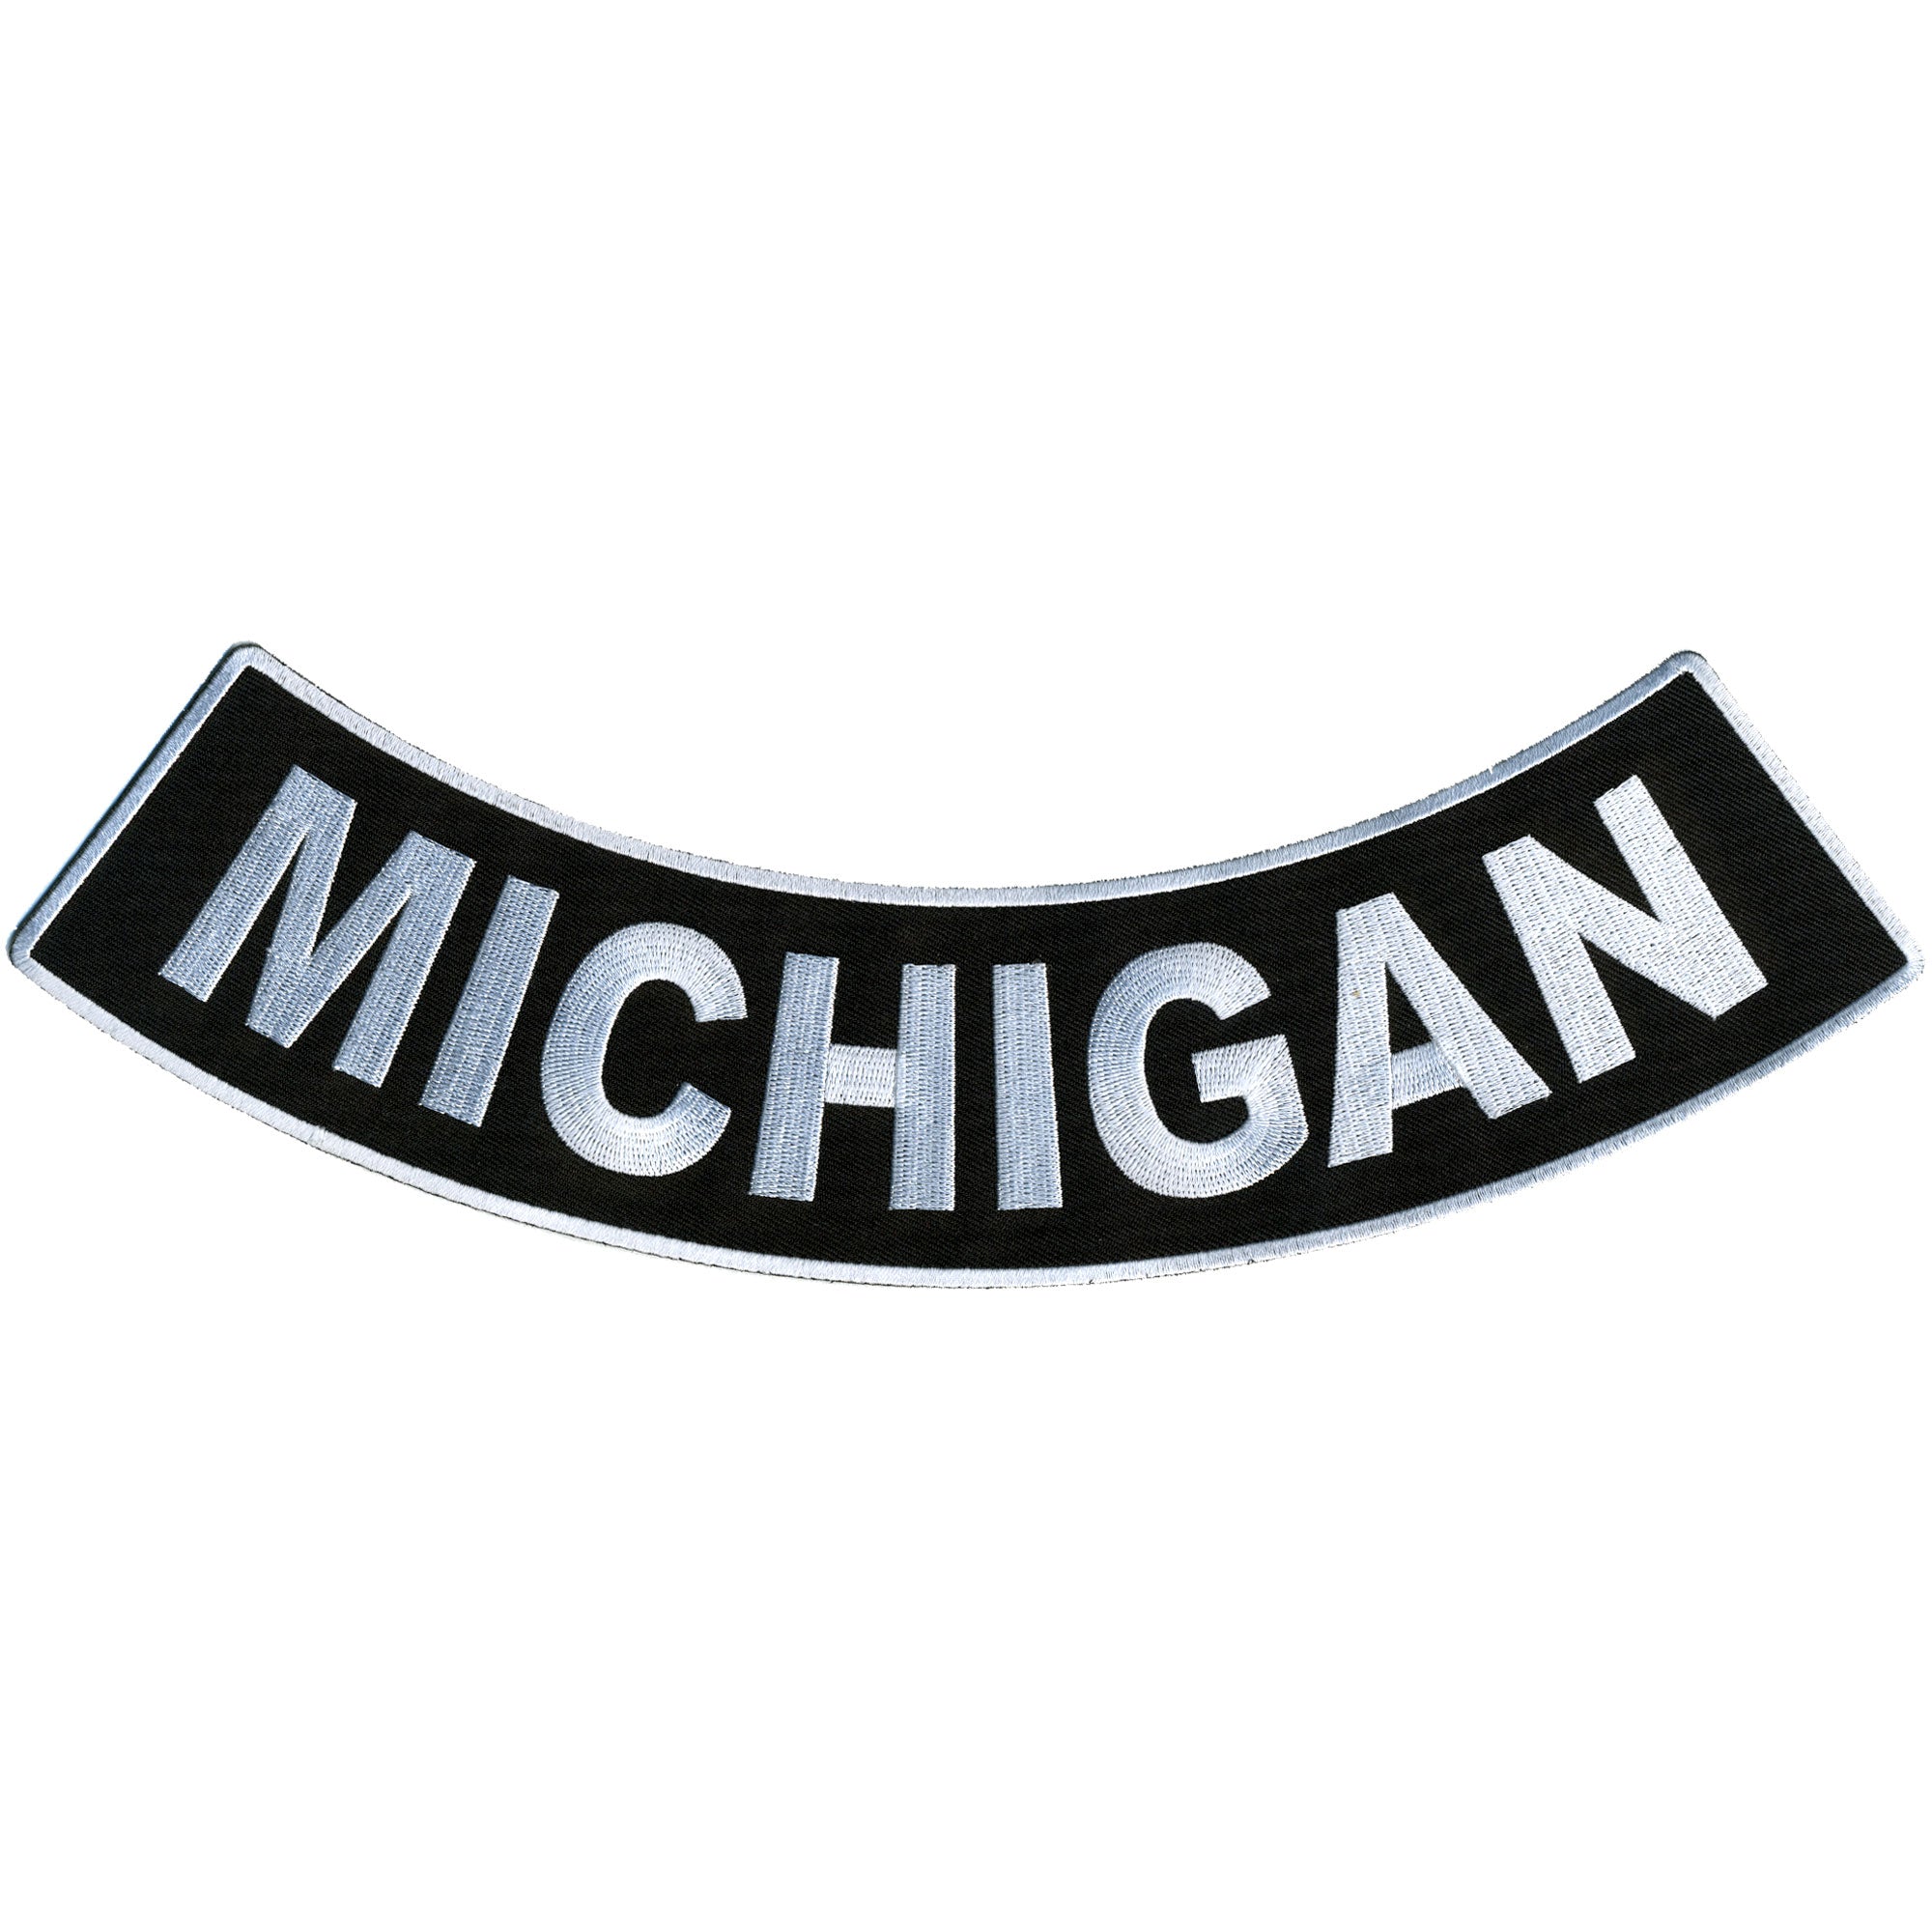 Hot Leathers Michigan 12” X 3” Bottom Rocker Patch